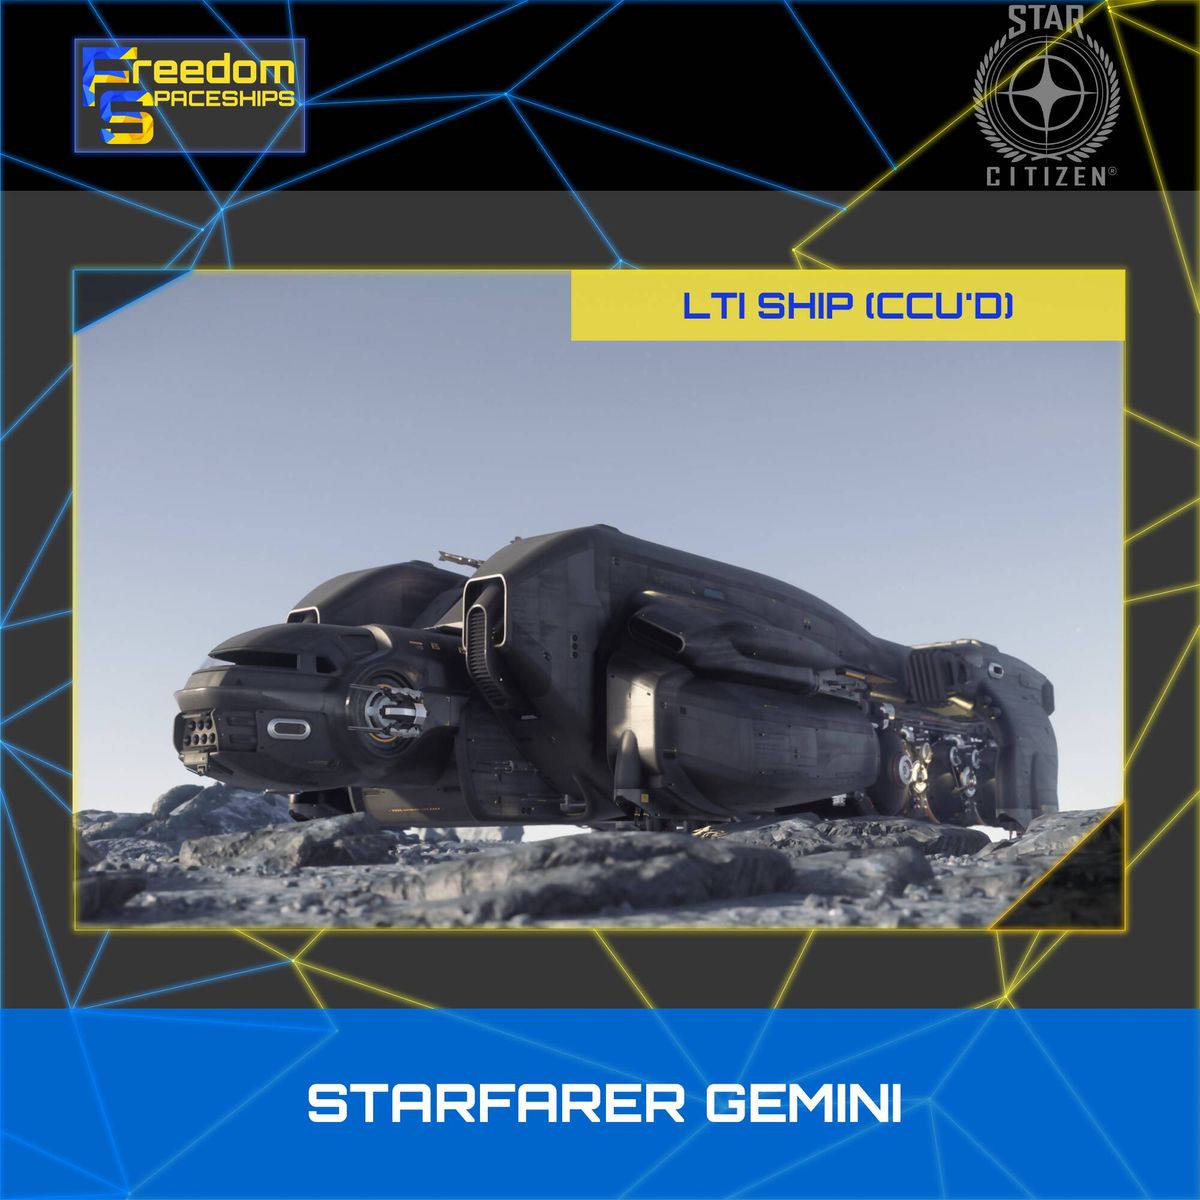 MISC Starfarer Gemini - LTI - CCU'd